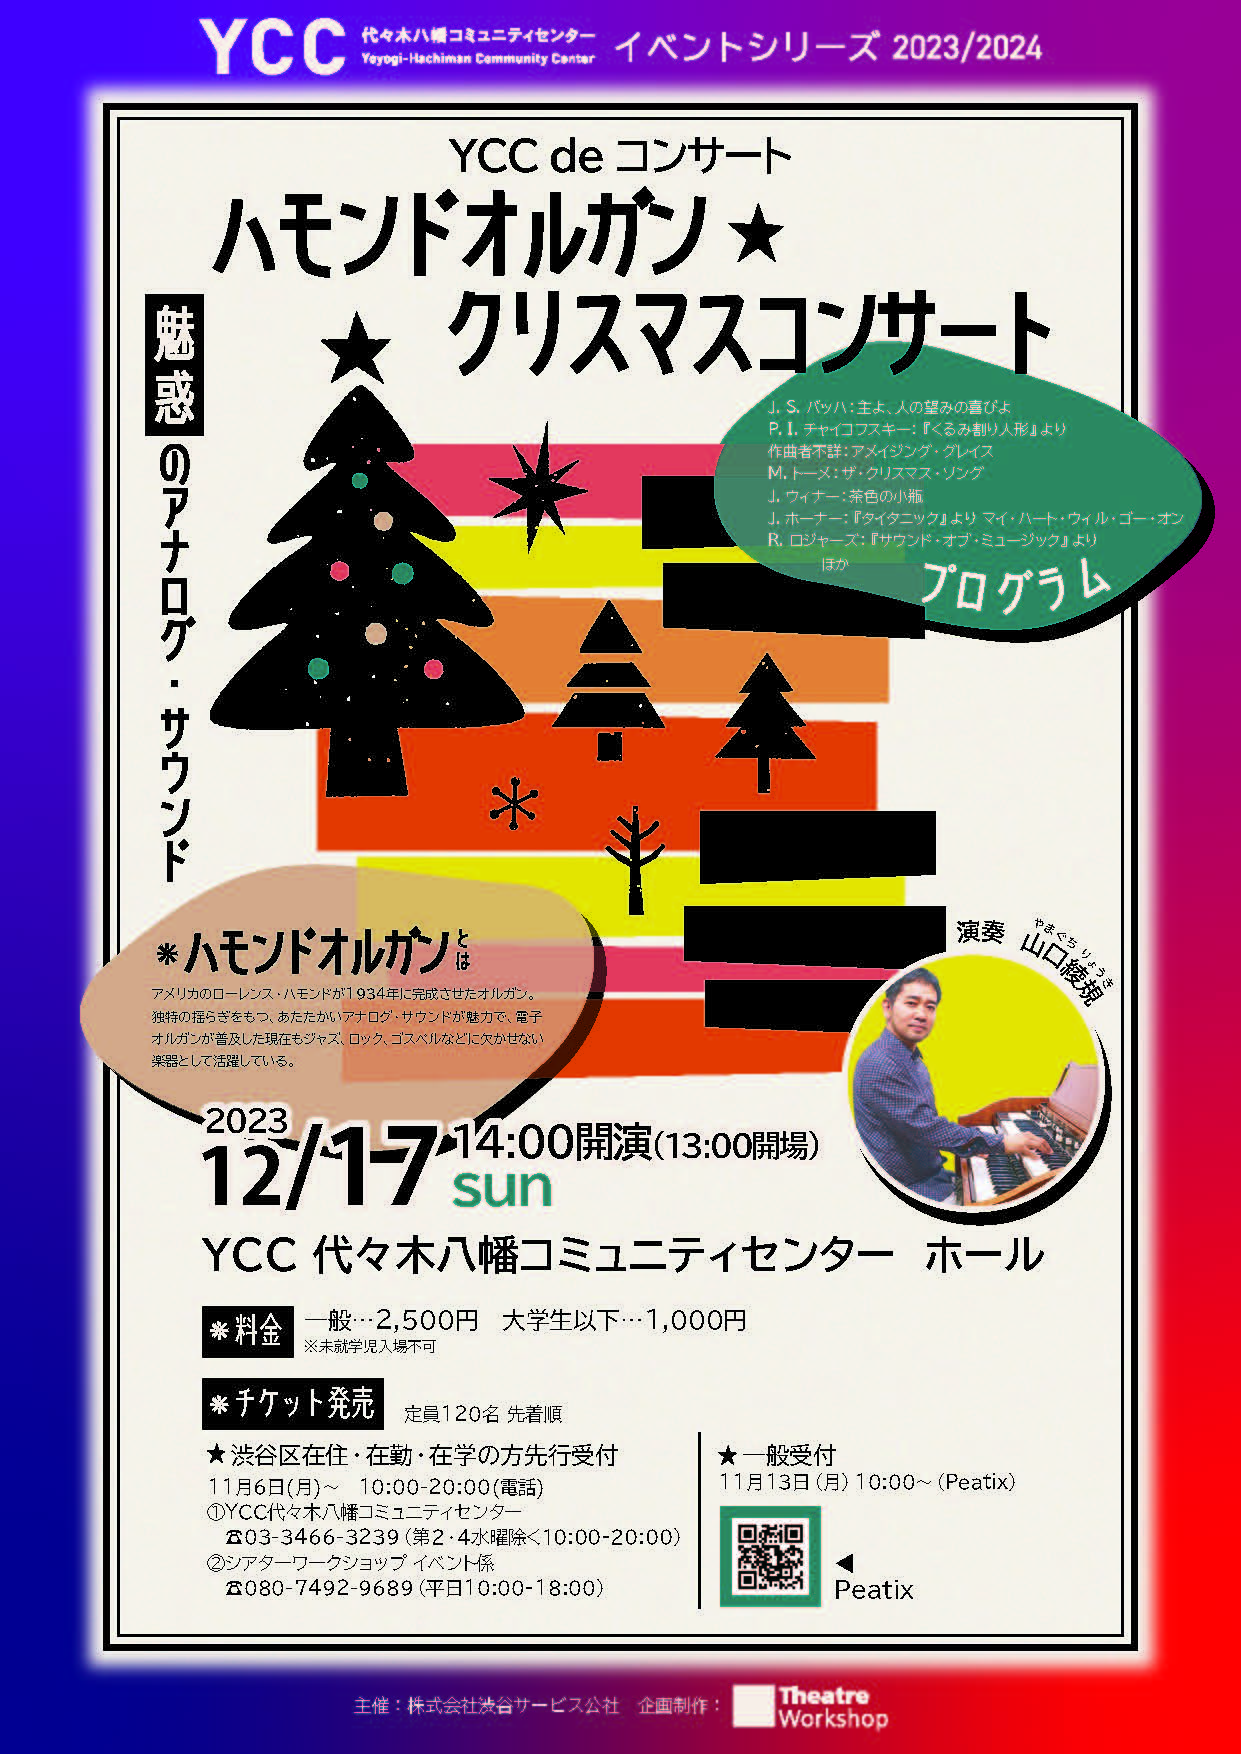 YCC de コンサート『ハモンドオルガン☆クリスマスコンサート』のサムネイル